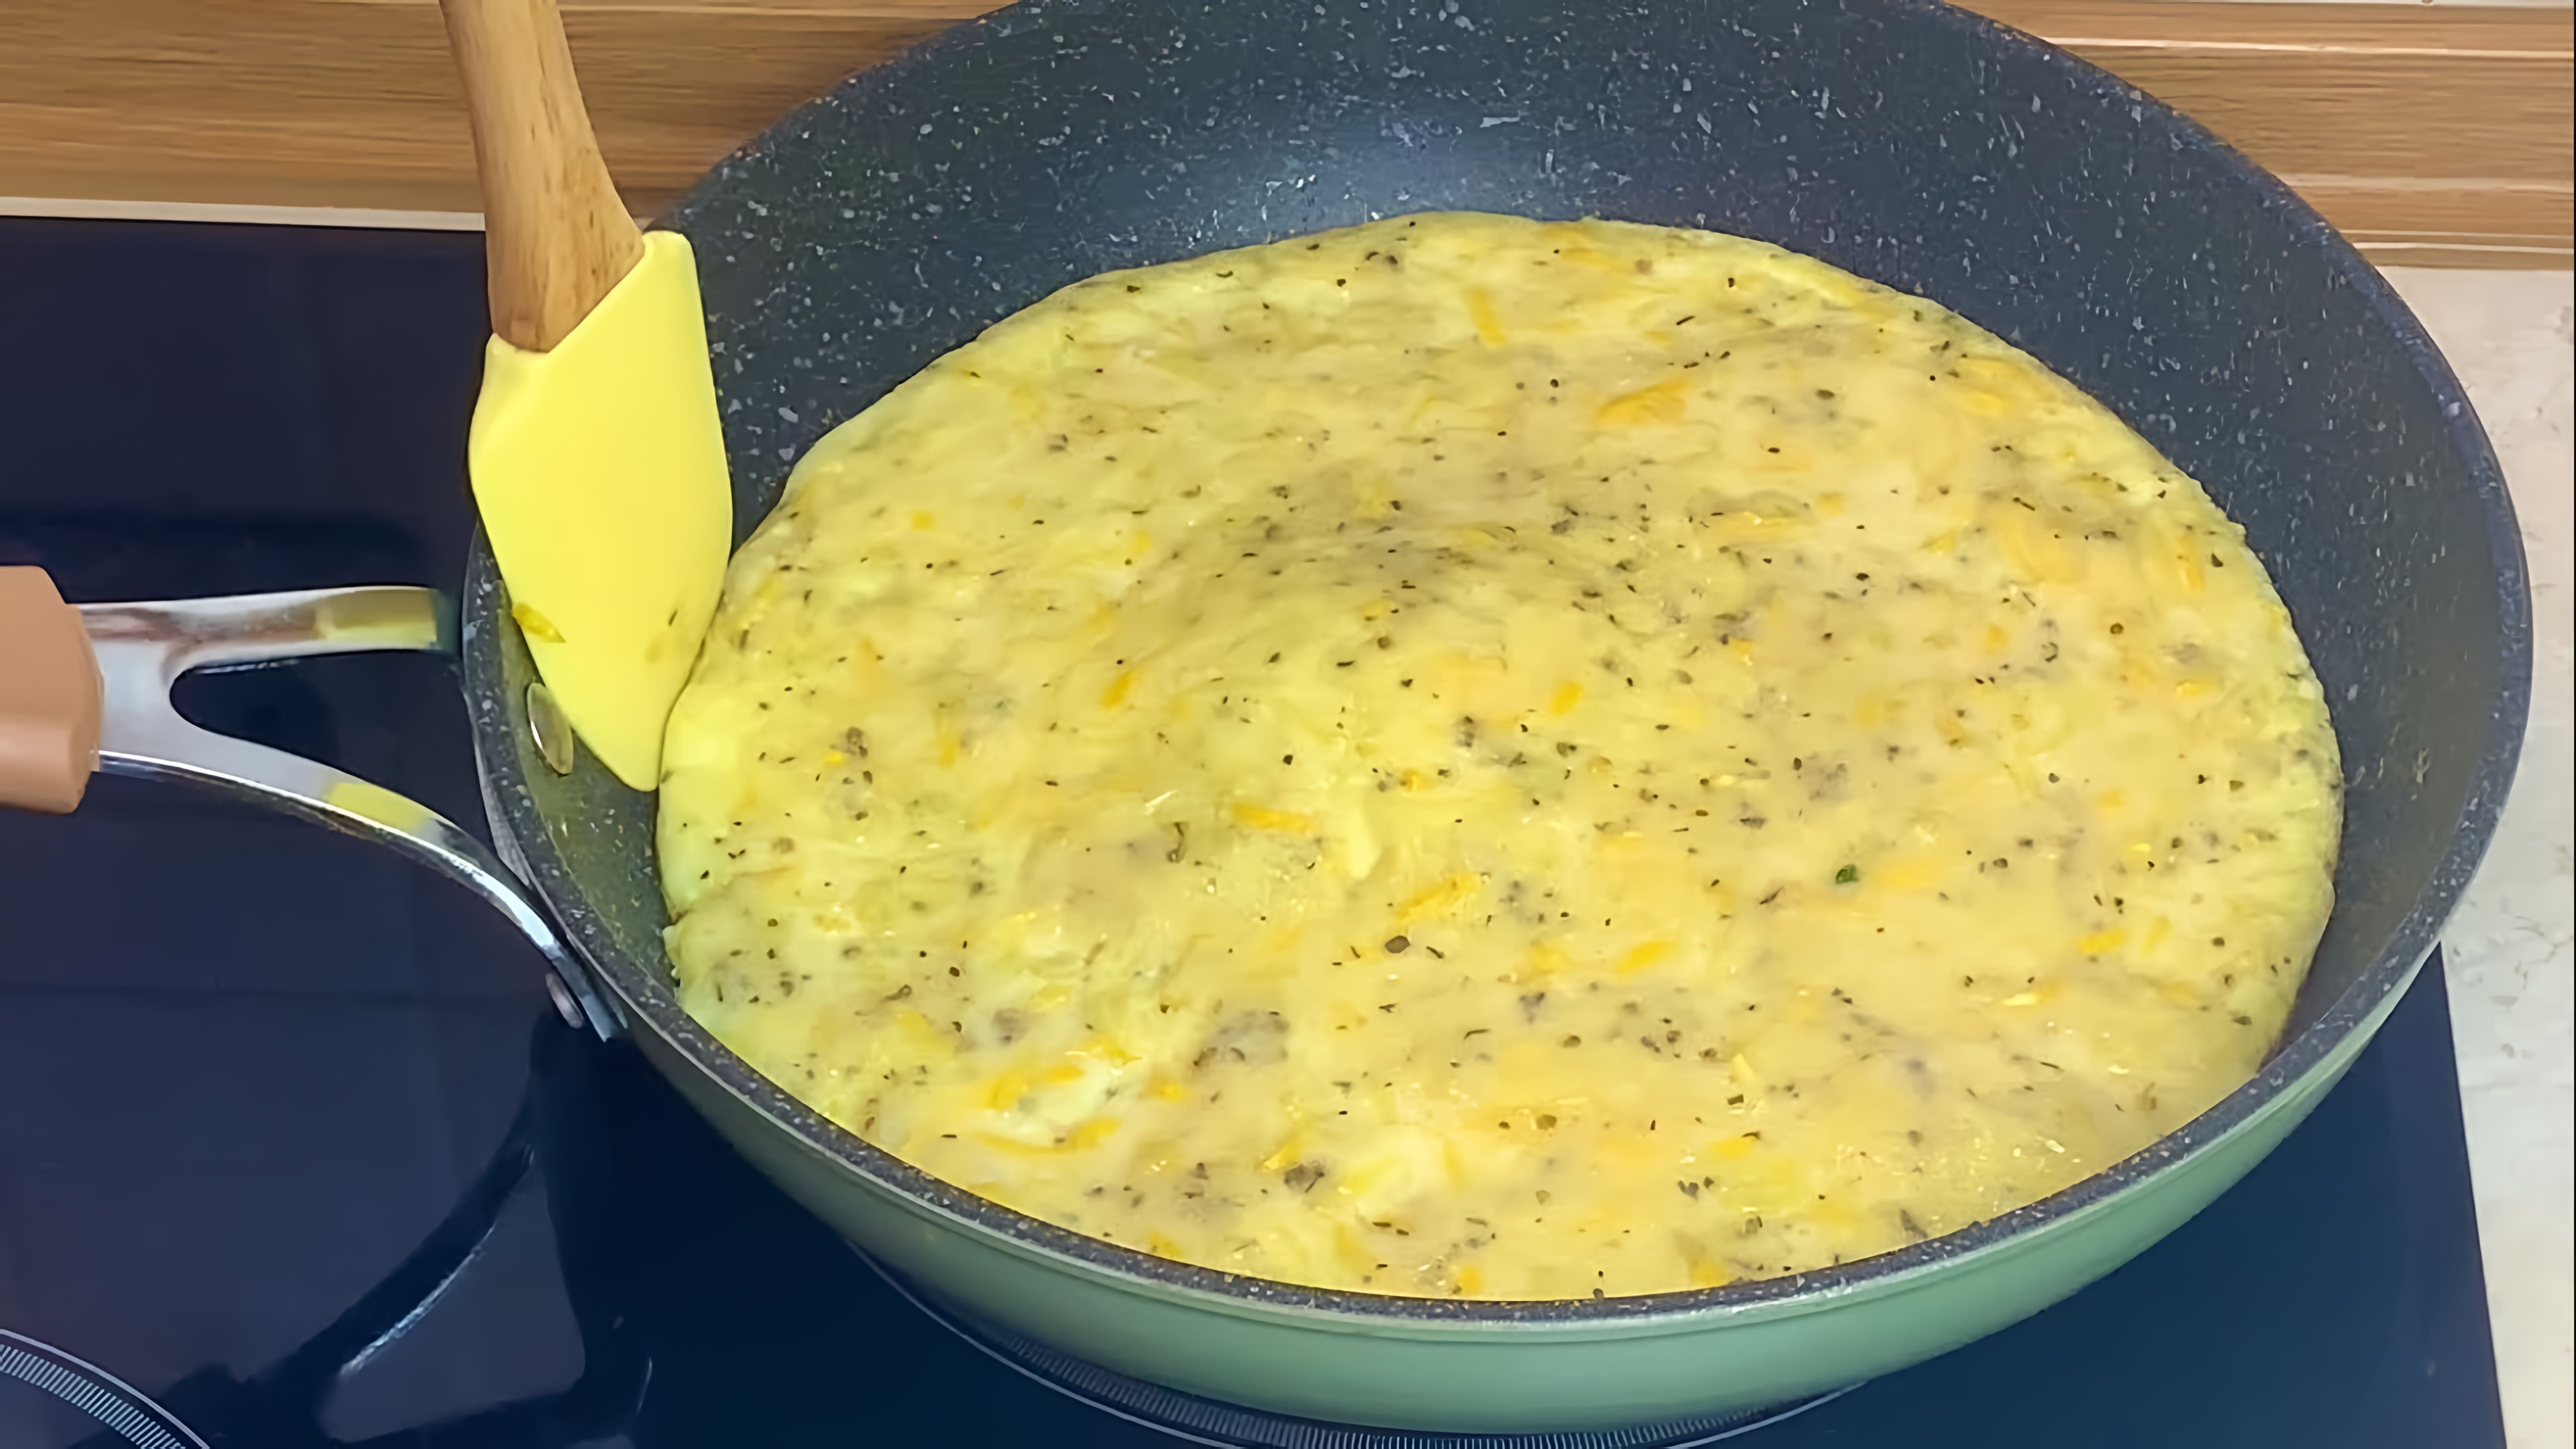 В этом видео демонстрируется рецепт быстрого и вкусного ужина из кабачков и яиц, который можно приготовить всего за 15 минут